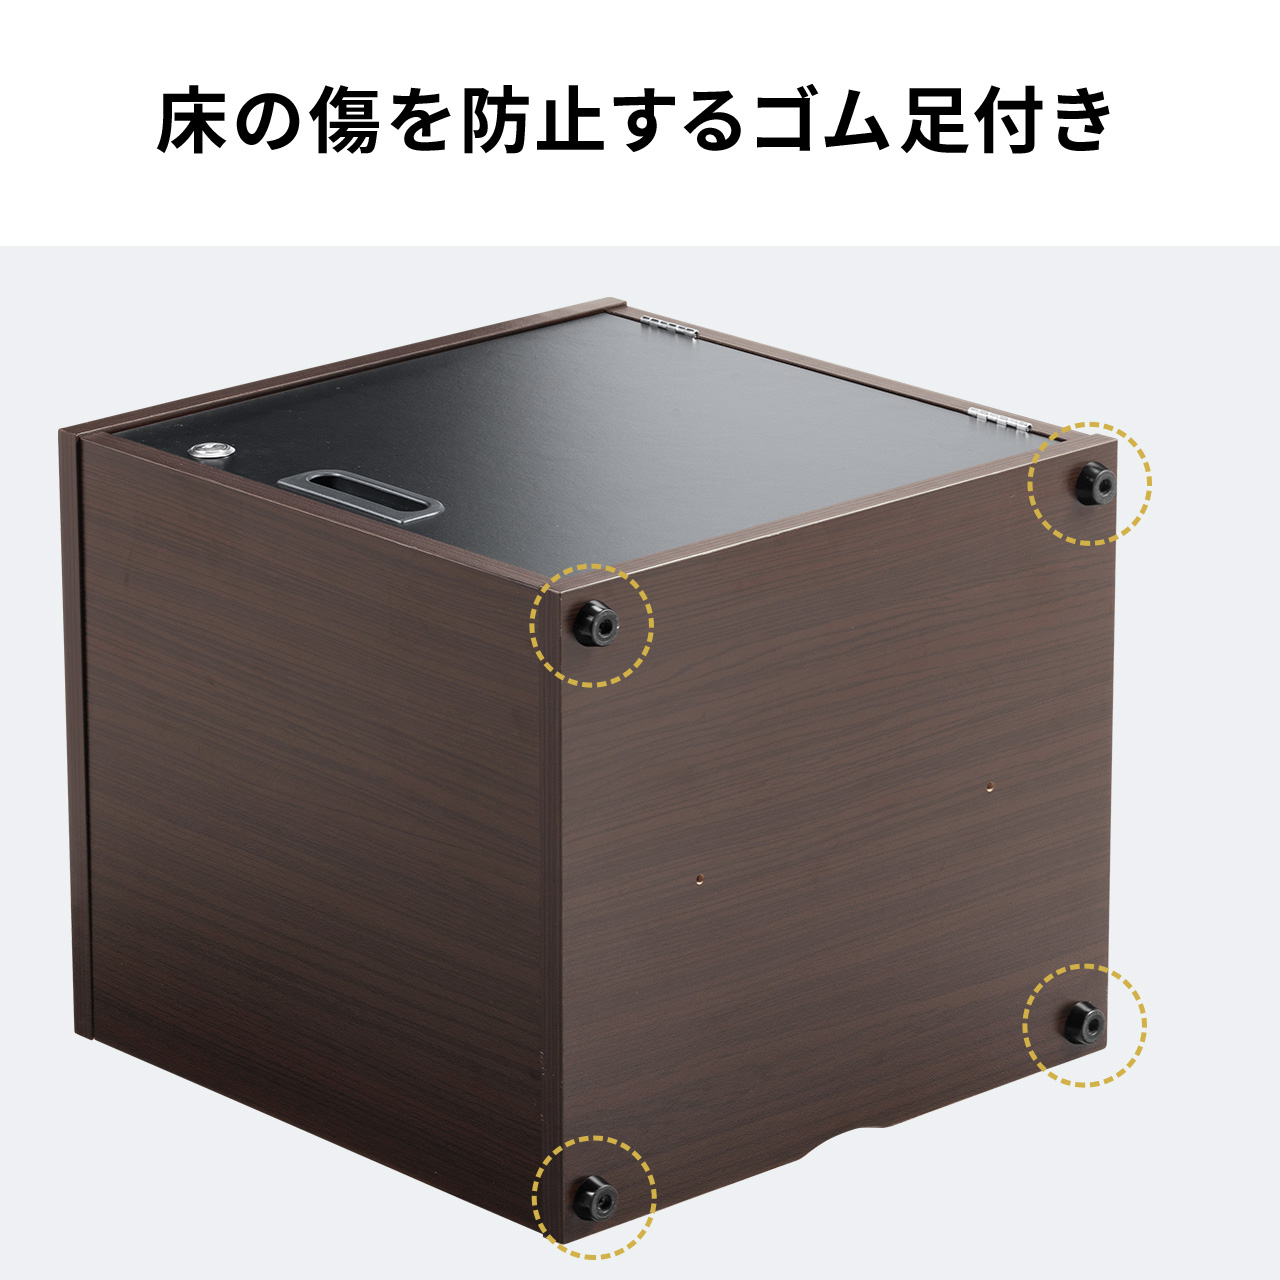 セキュリティボックス キューブボックス 鍵付き カギ 木製 木目 小型 